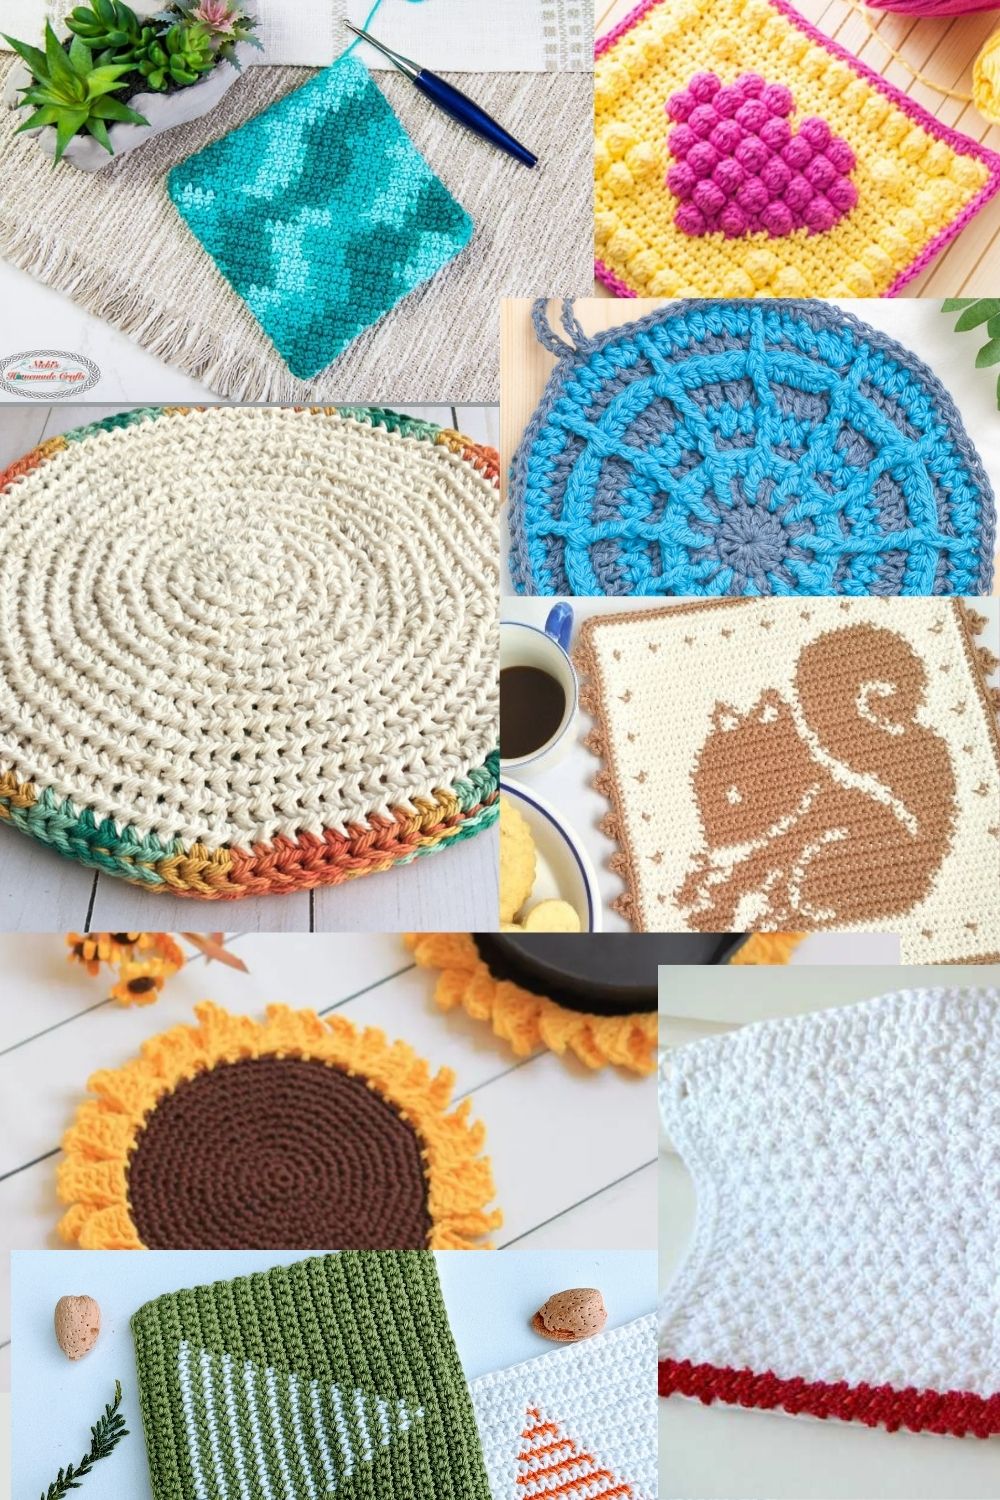 https://mycrochetspace.com/wp-content/uploads/2021/05/crochet-flowers-1.jpg